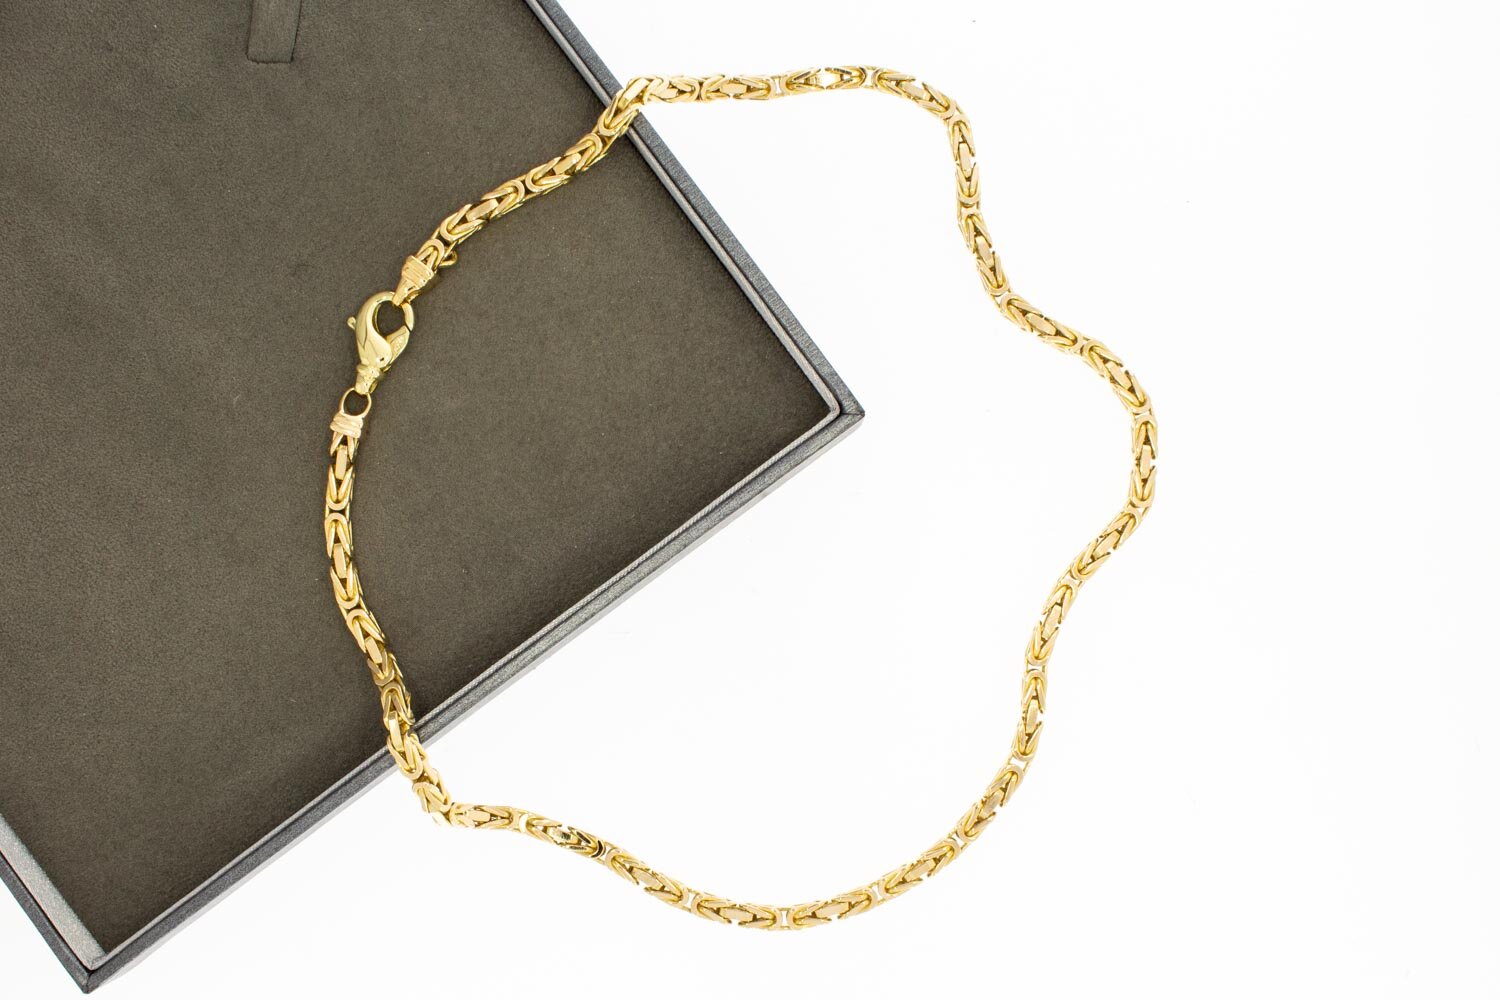 14 Karat Gold Halskette des byzantinischen Königs - 46 cm